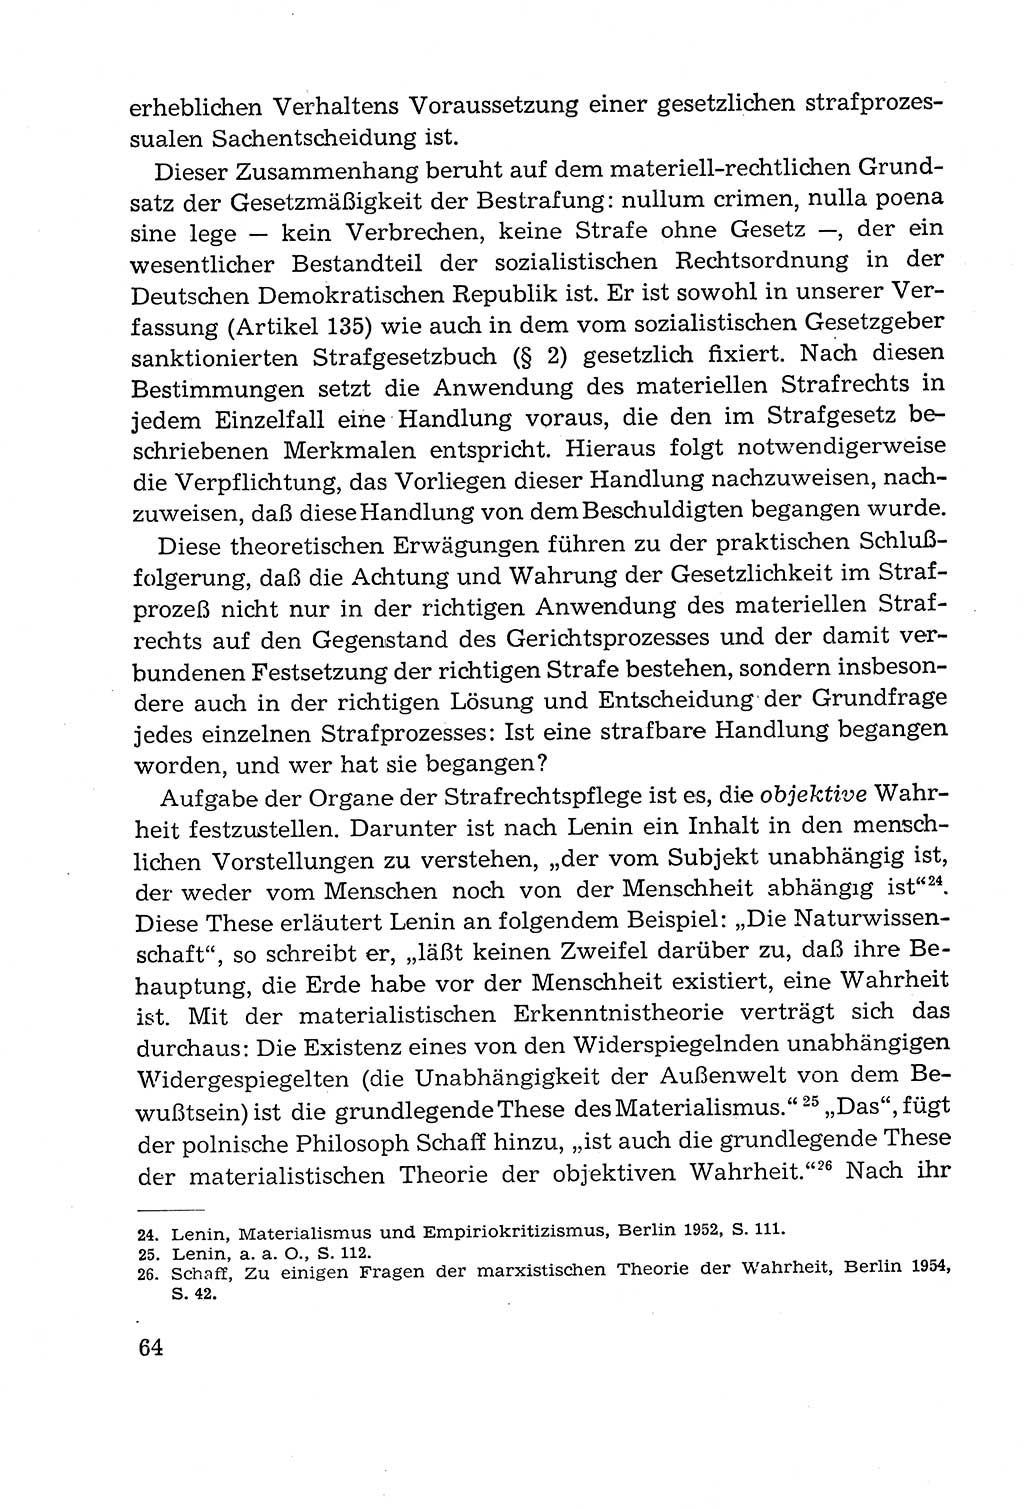 Leitfaden des Strafprozeßrechts der Deutschen Demokratischen Republik (DDR) 1959, Seite 64 (LF StPR DDR 1959, S. 64)